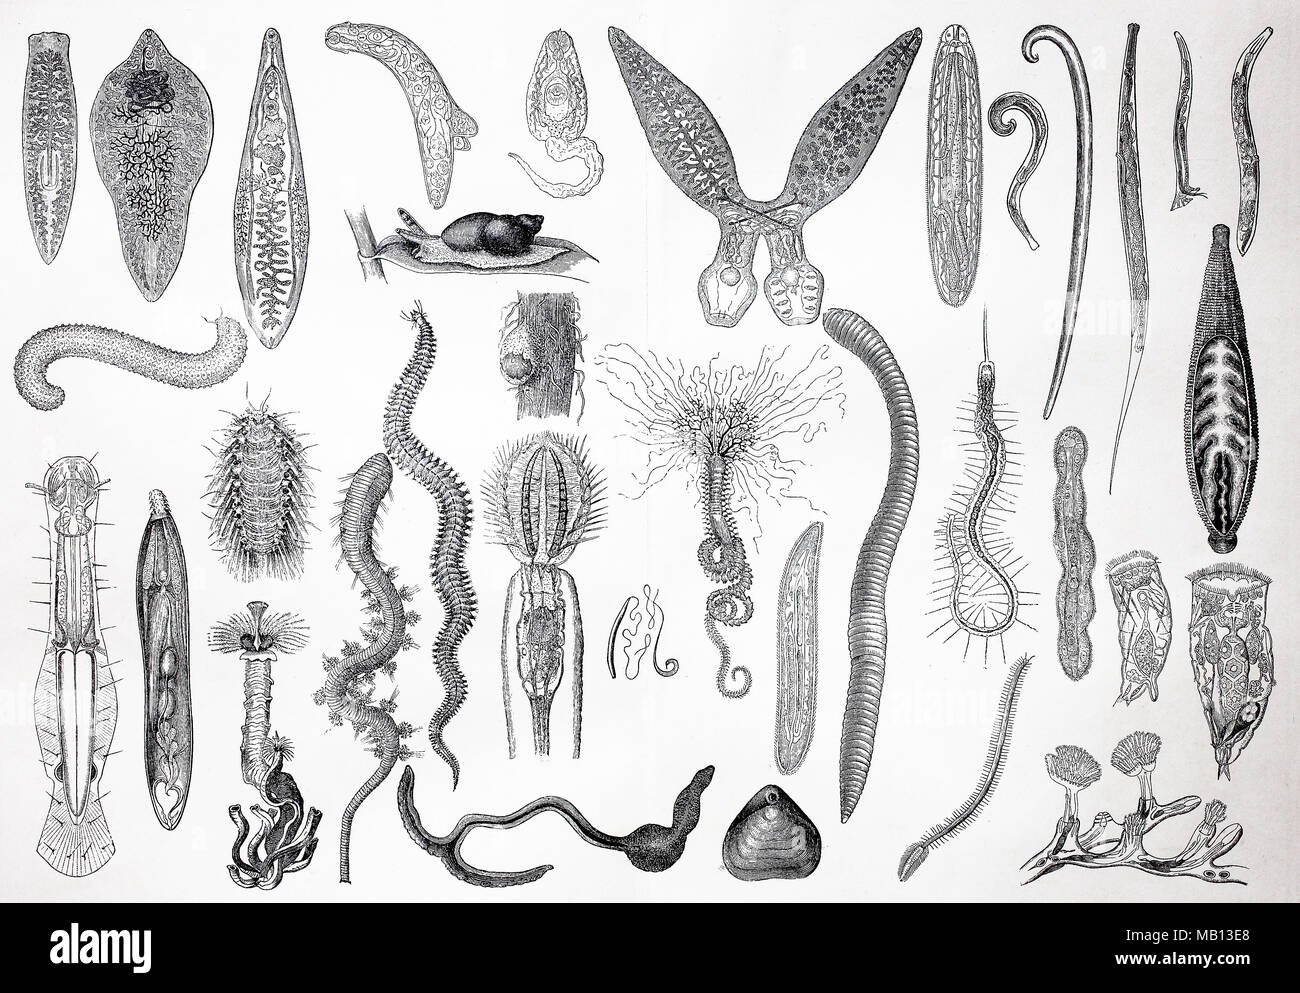 Многоклеточные организмы возникли в эру. Примитивные беспозвоночные. Многоклеточные существа. Многоклеточные беспозвоночные животные. Самые древние многоклеточные животные.